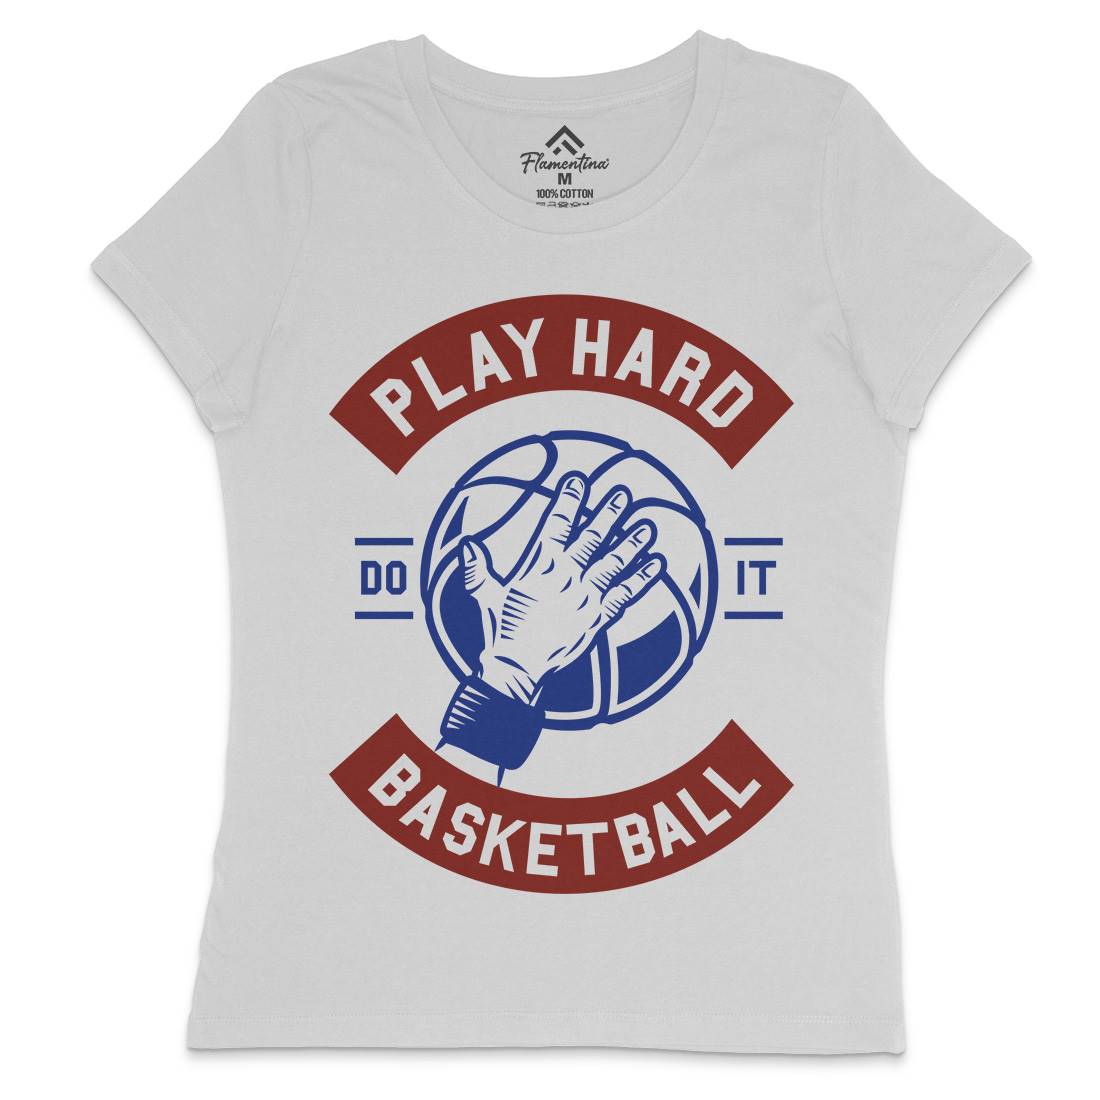 Play Hard Basketball Womens Crew Neck T-Shirt Sport A261